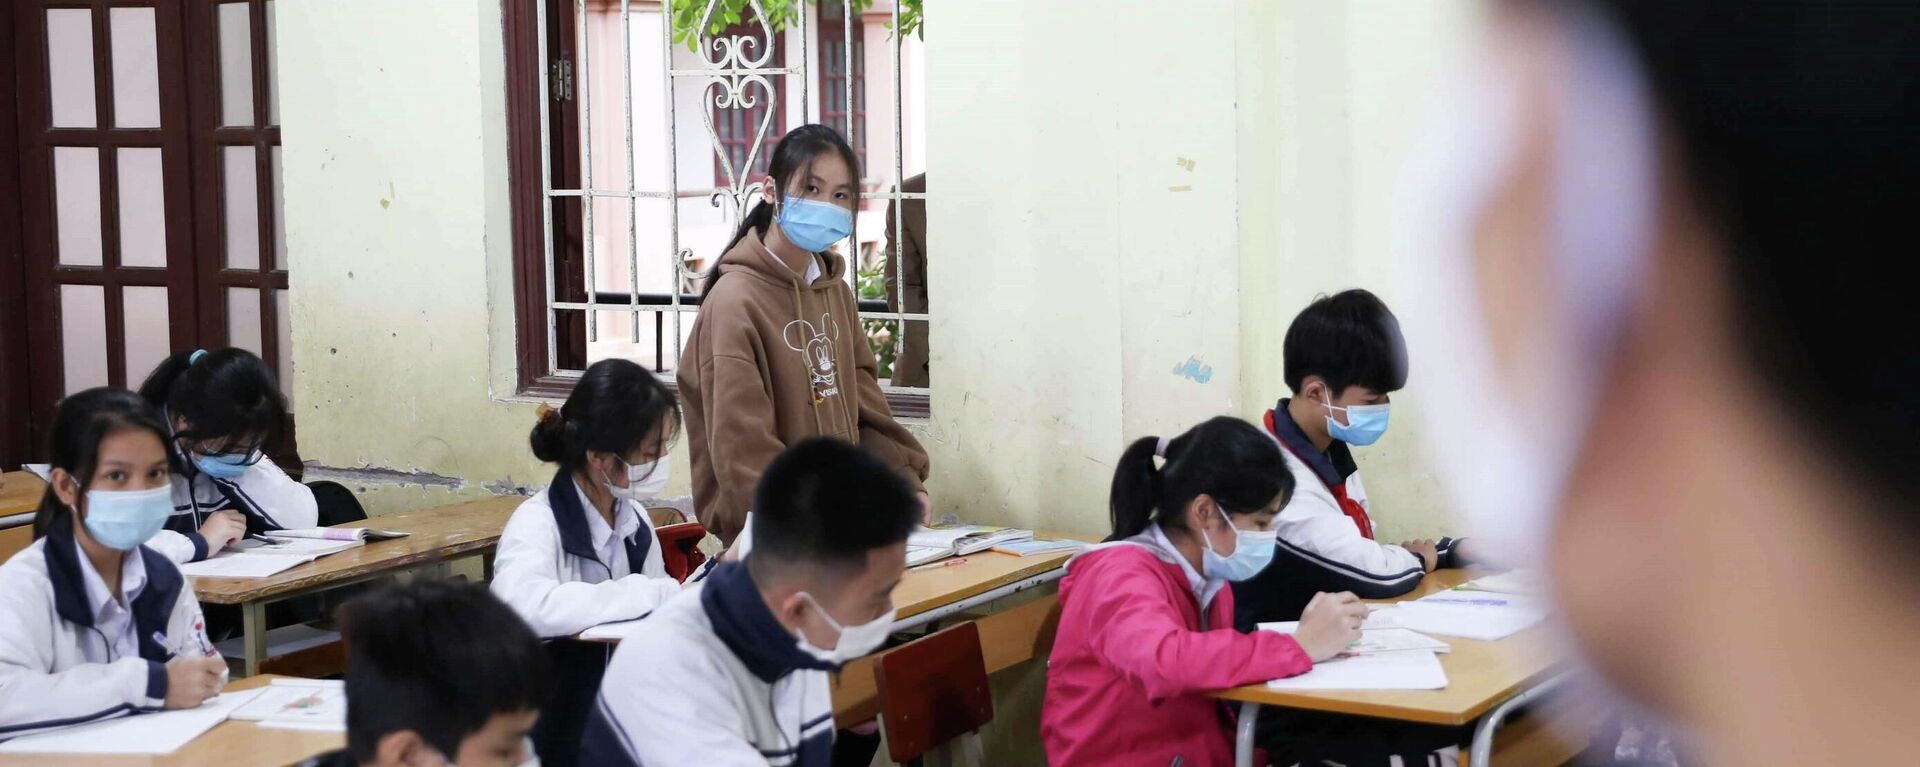 Để tổ chức học trực tiếp, các trường học phải đạt yêu cầu an toàn trong phòng, chống dịch COVID-19 theo các tiêu chí của Sở Giáo dục và Đào tạo và Sở Y tế. - Sputnik Việt Nam, 1920, 10.01.2022